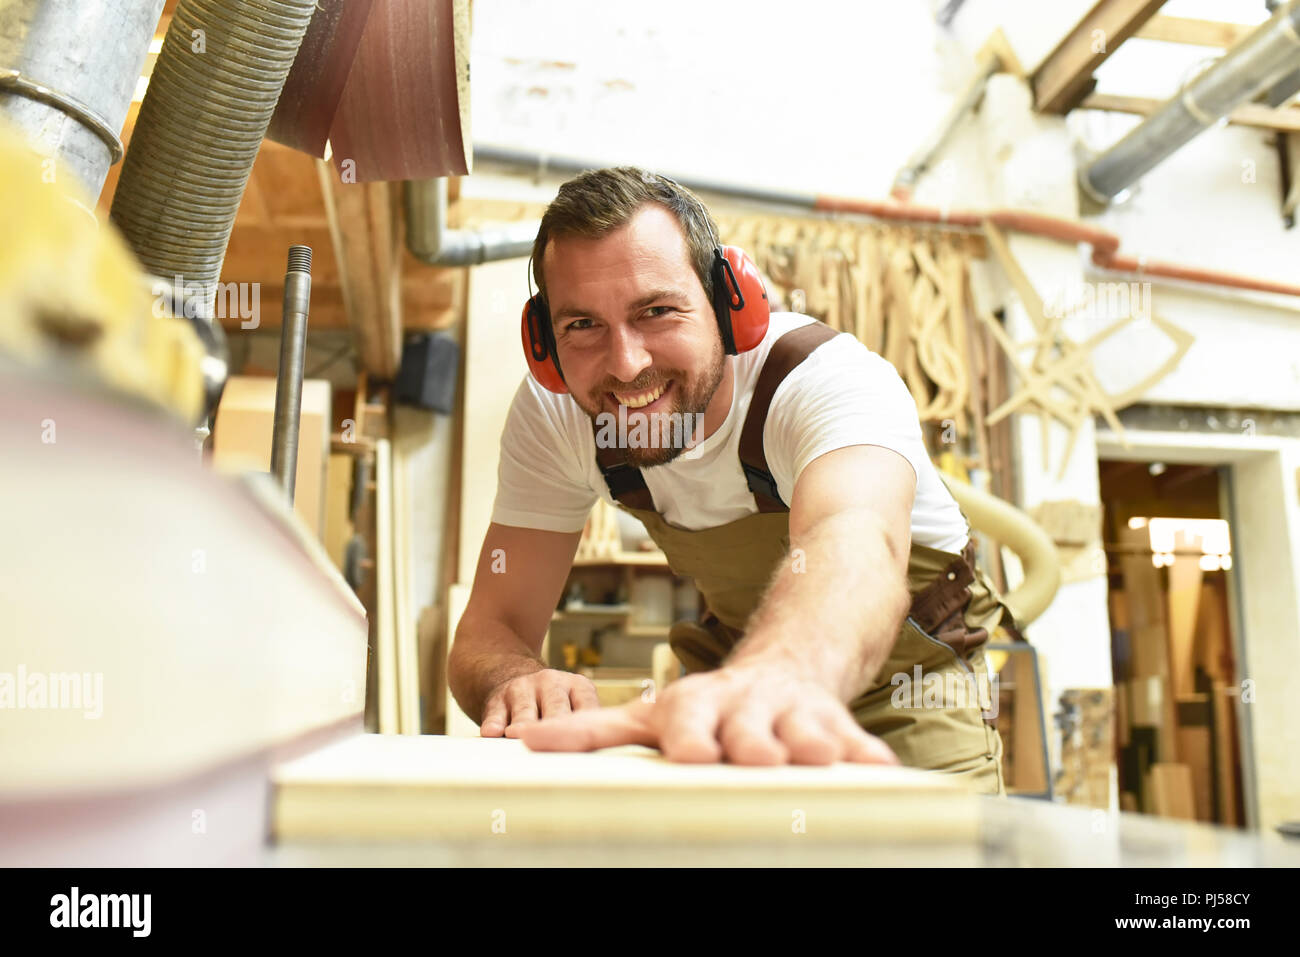 Tischler arbeitet in einer Tischlerei - Workshop für die Holzbearbeitung und Sägen Stockfoto